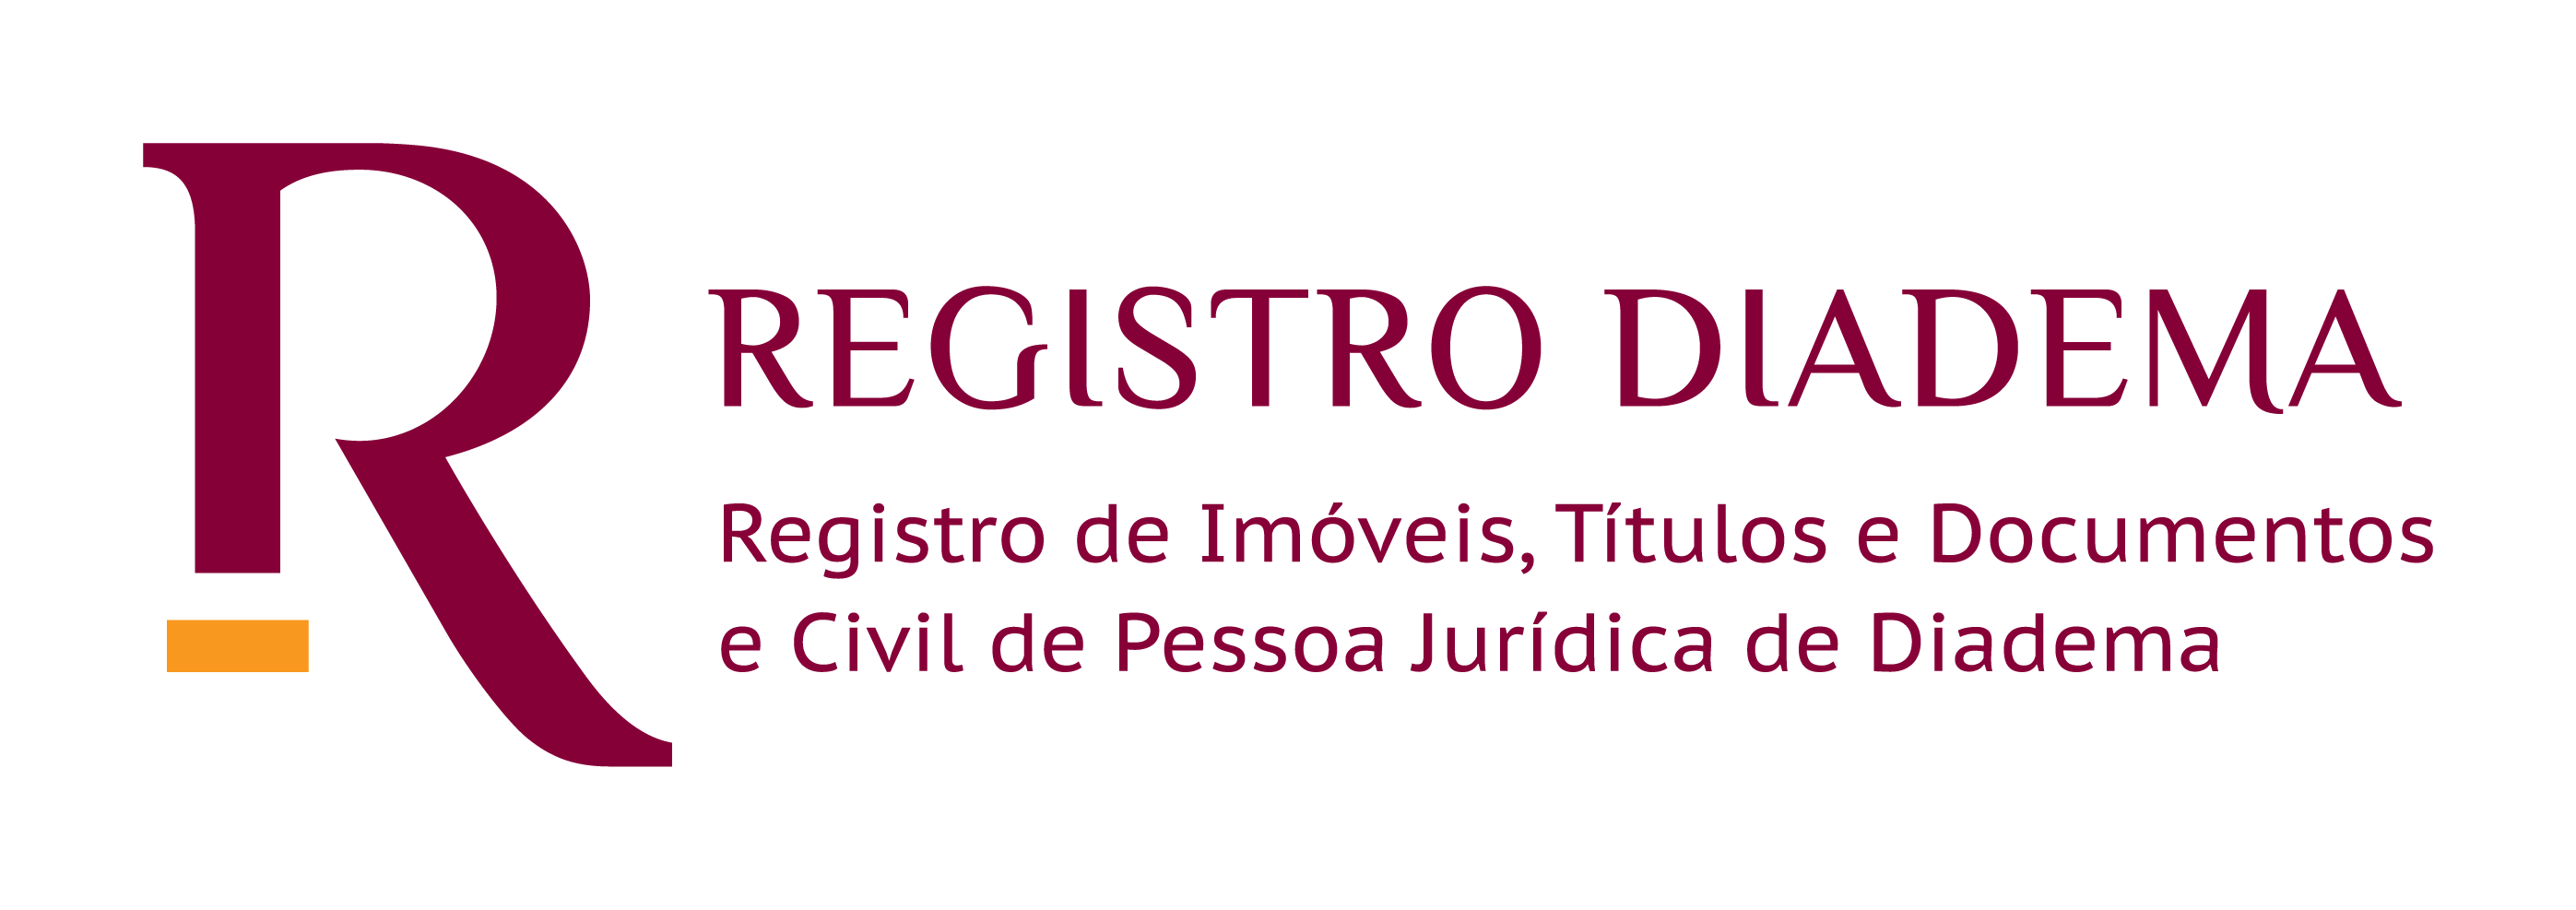 Registro de Imóveis Títulos e Documentos Civil Pessoa Jurídica de Diadema